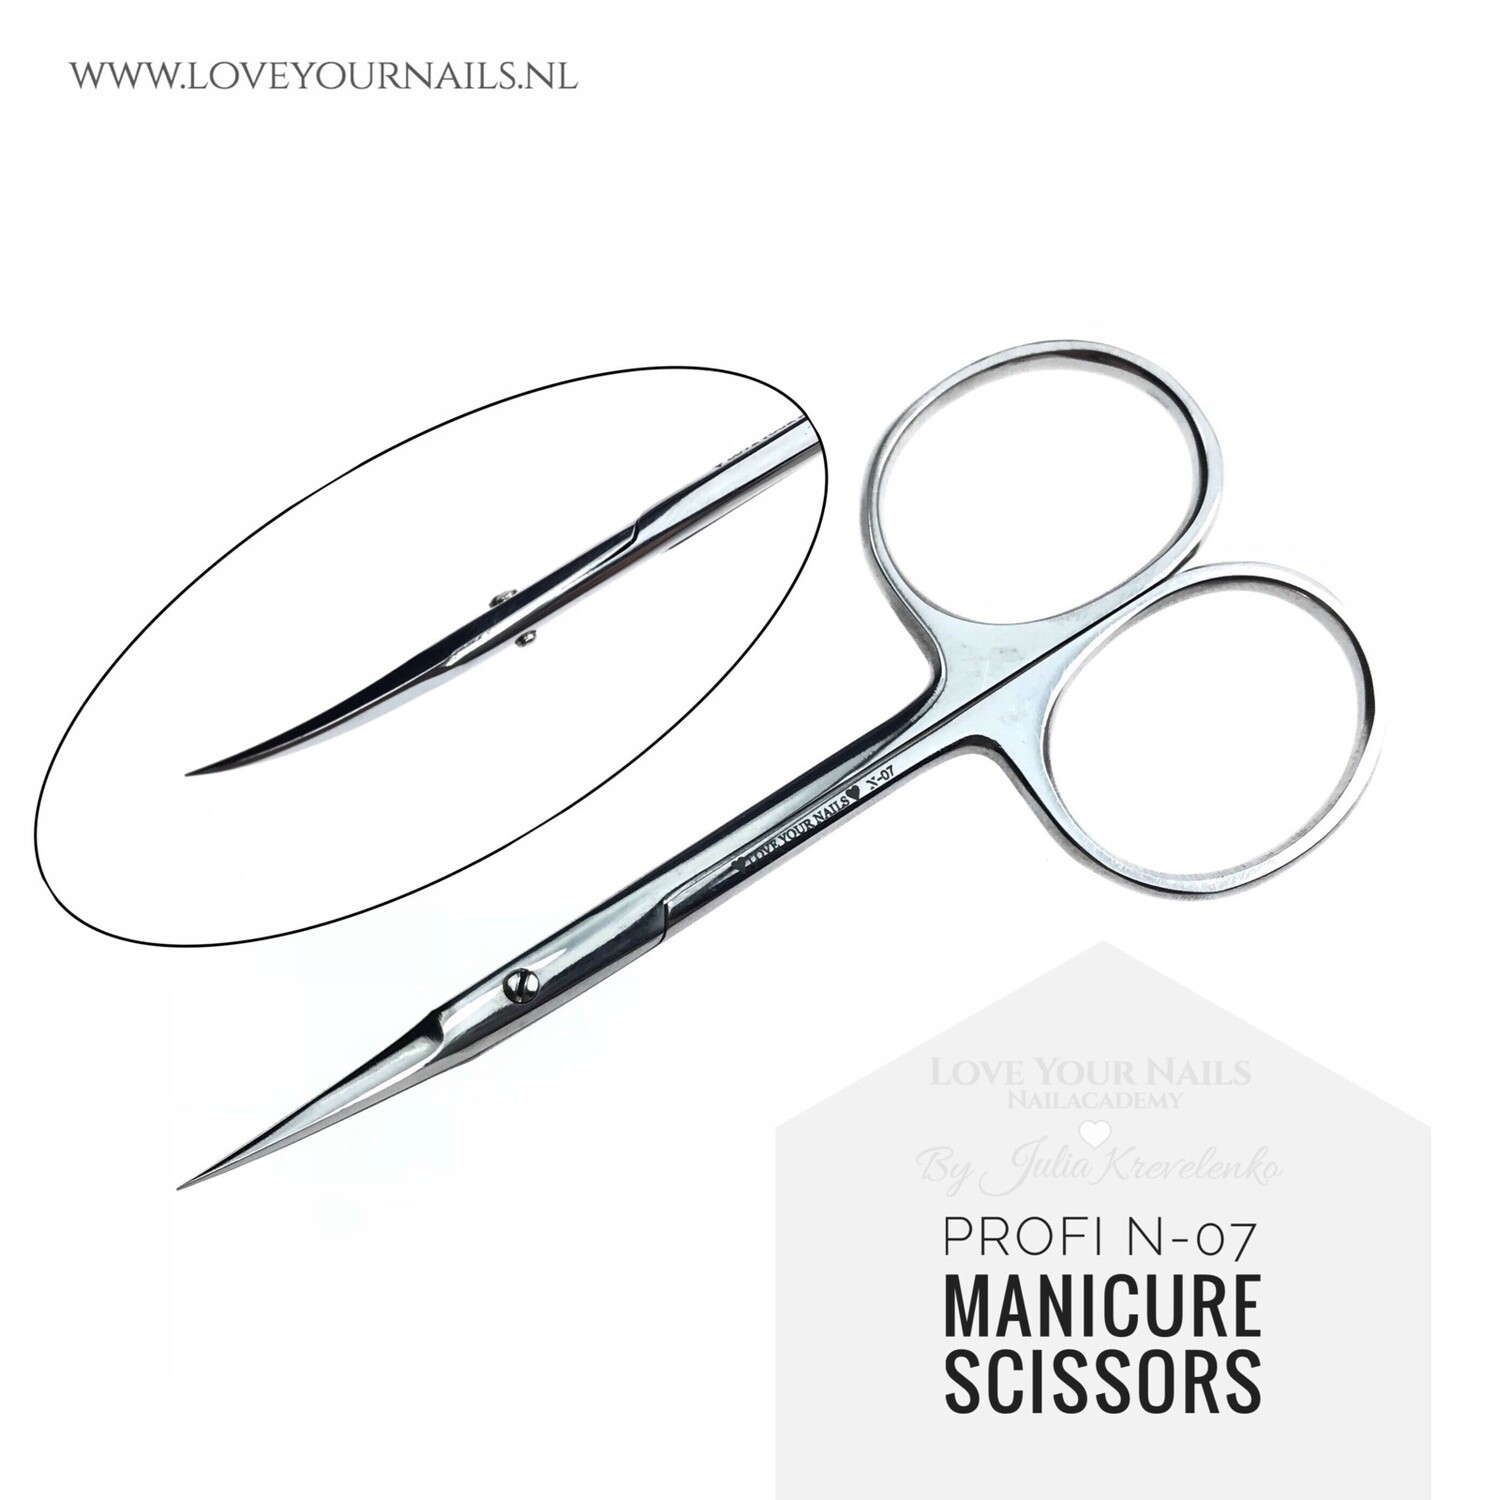 Manicure scissors PROFI N-07